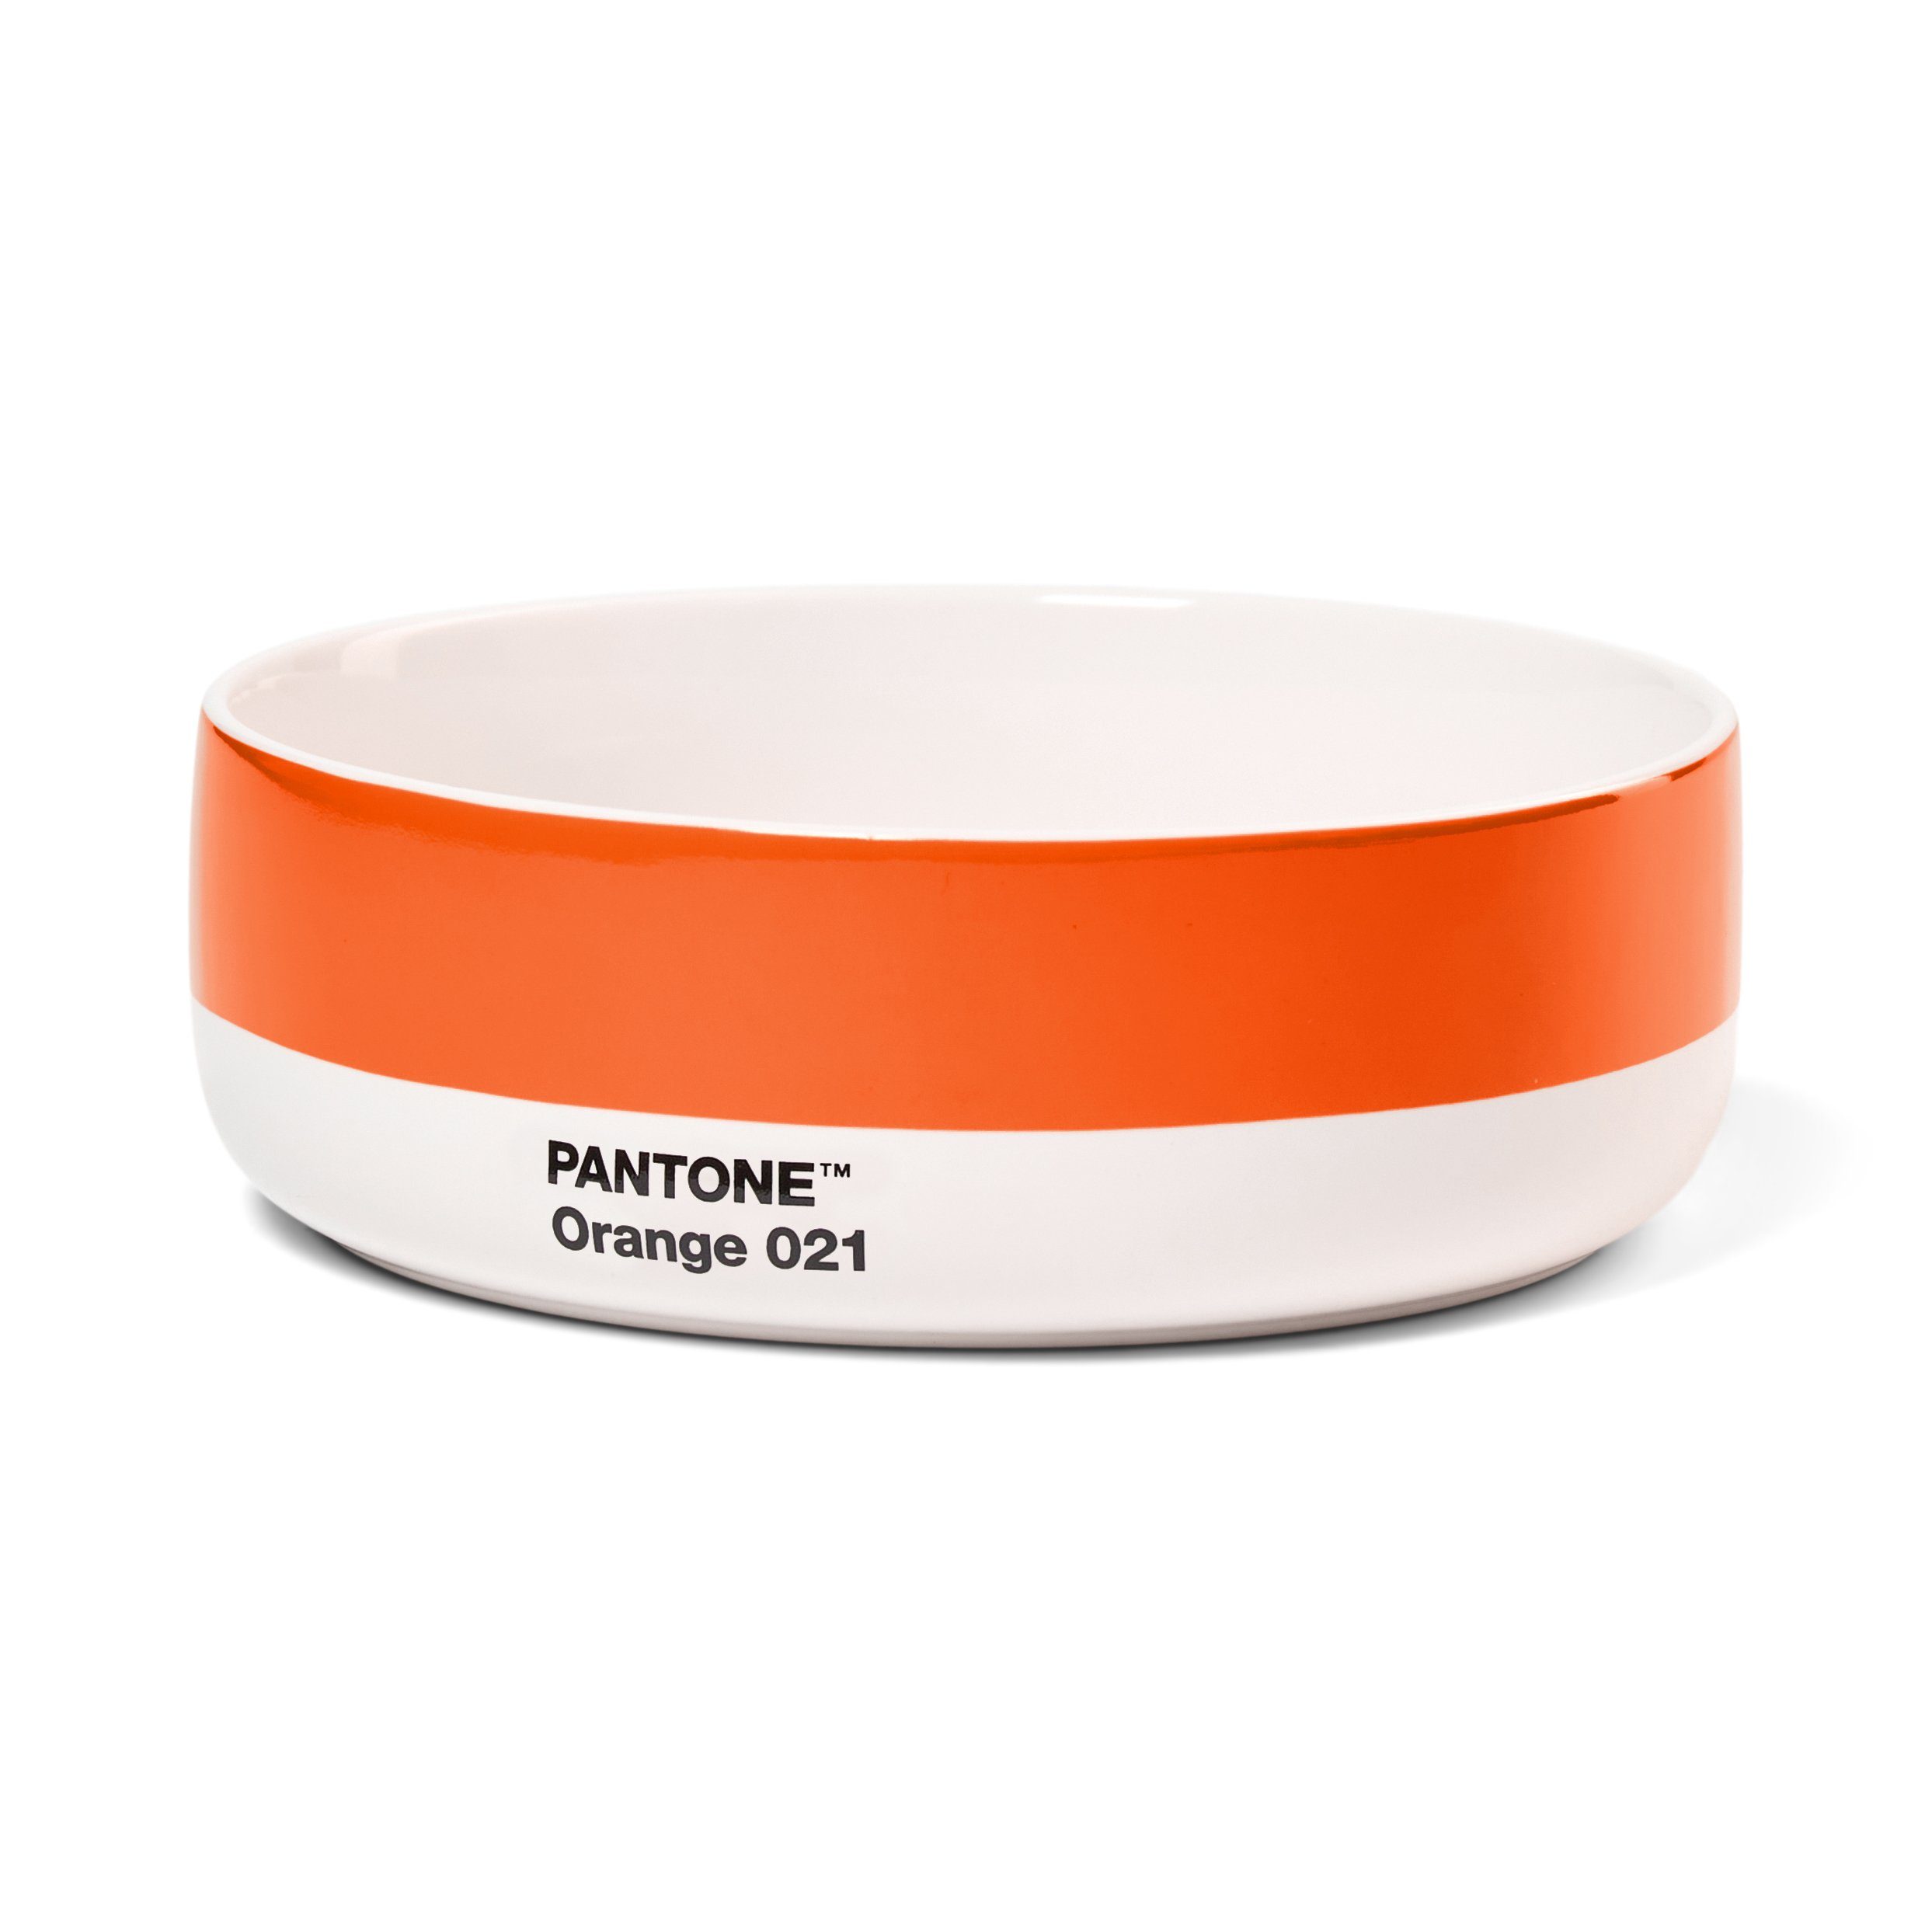 PANTONE Geschirr-Set, Copenhagen Design PANTONE Porzellan Schale für Müsli oder Suppen Orange 021